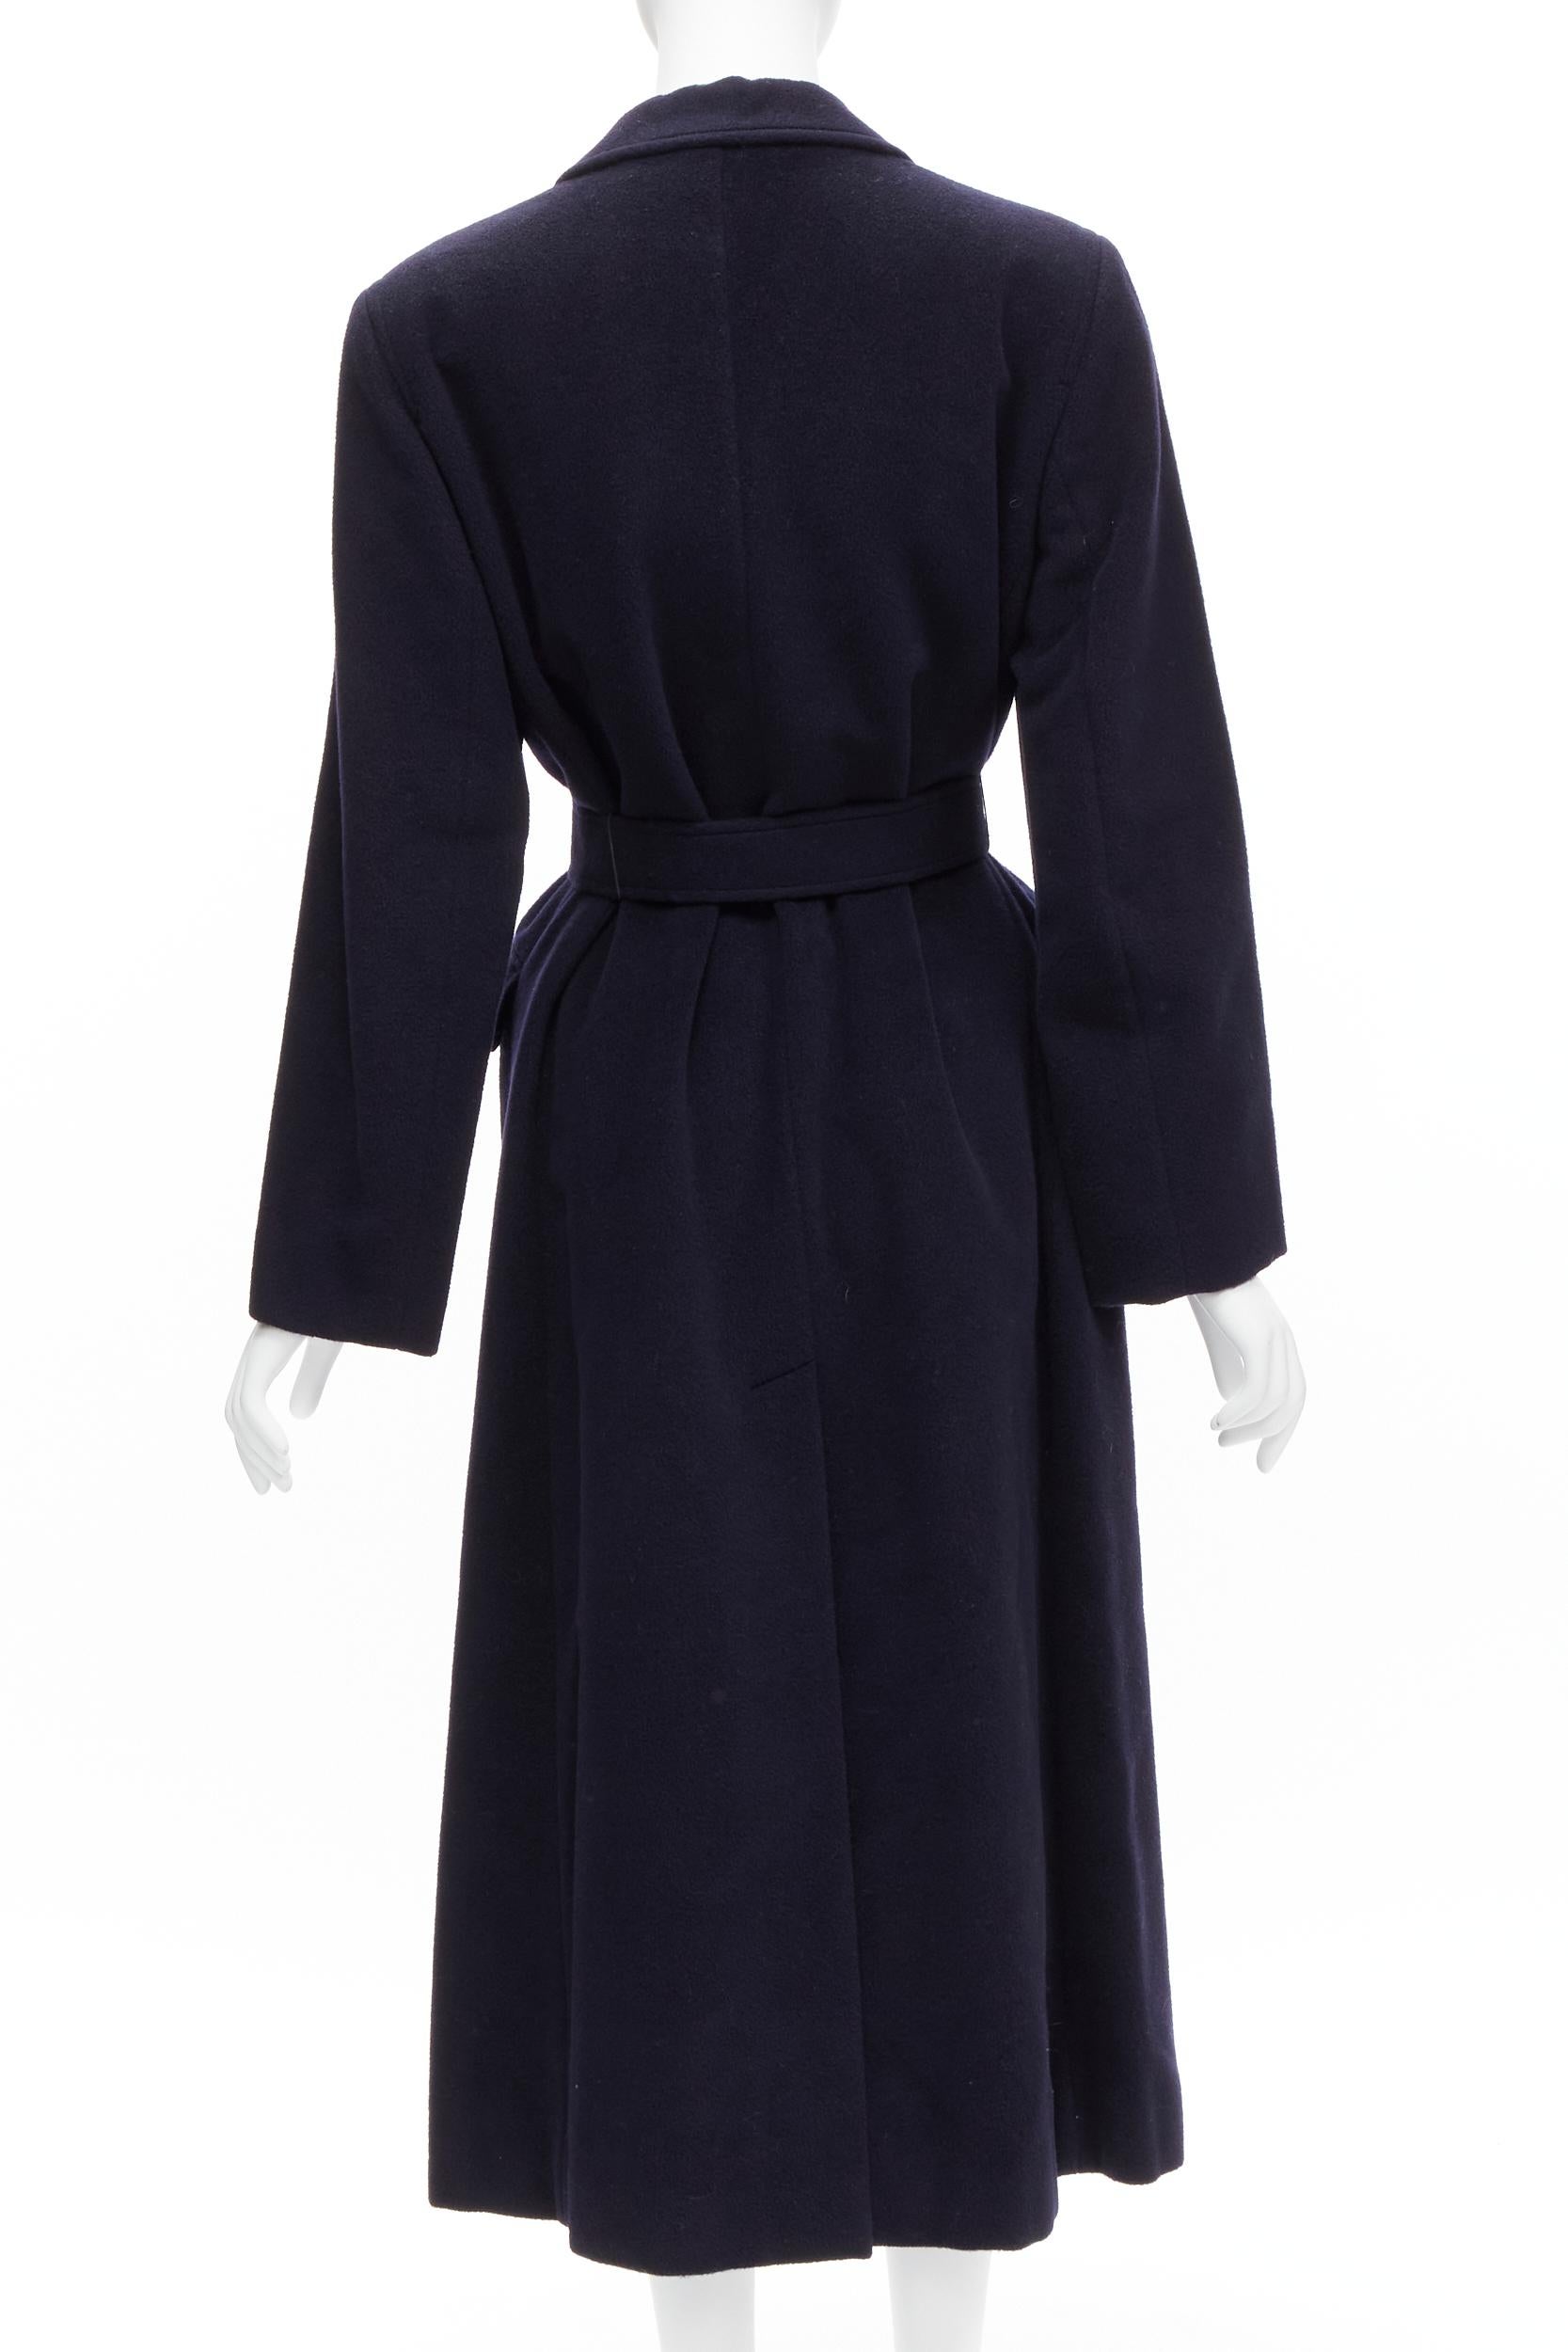 MAX MARA dark navy 100% virgin wool belted longline robe coat IT42 M 2